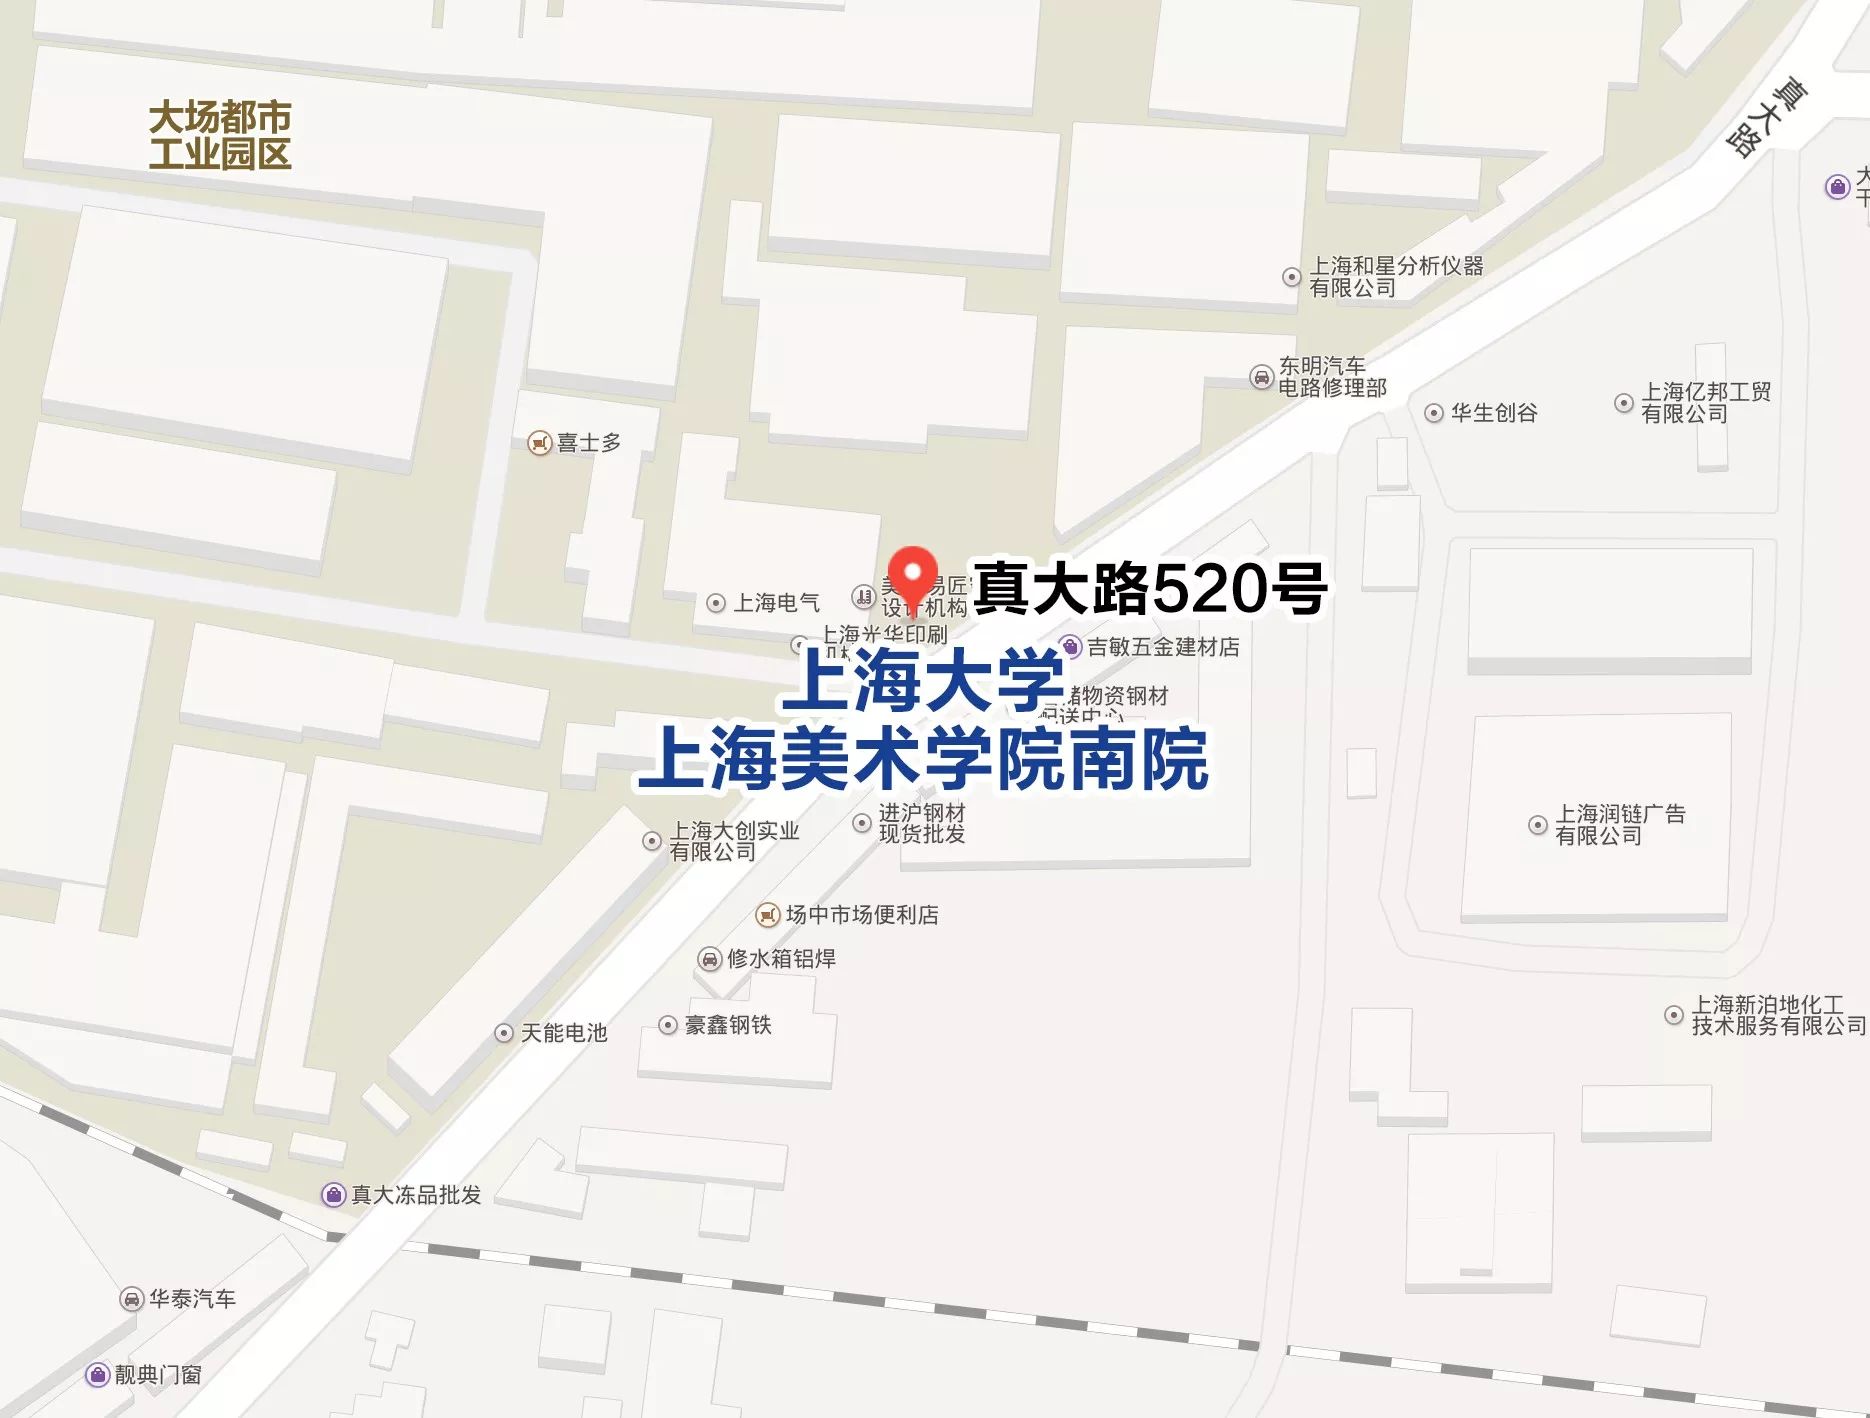 【教育】上大上海美院文教结合项目启动,不锈